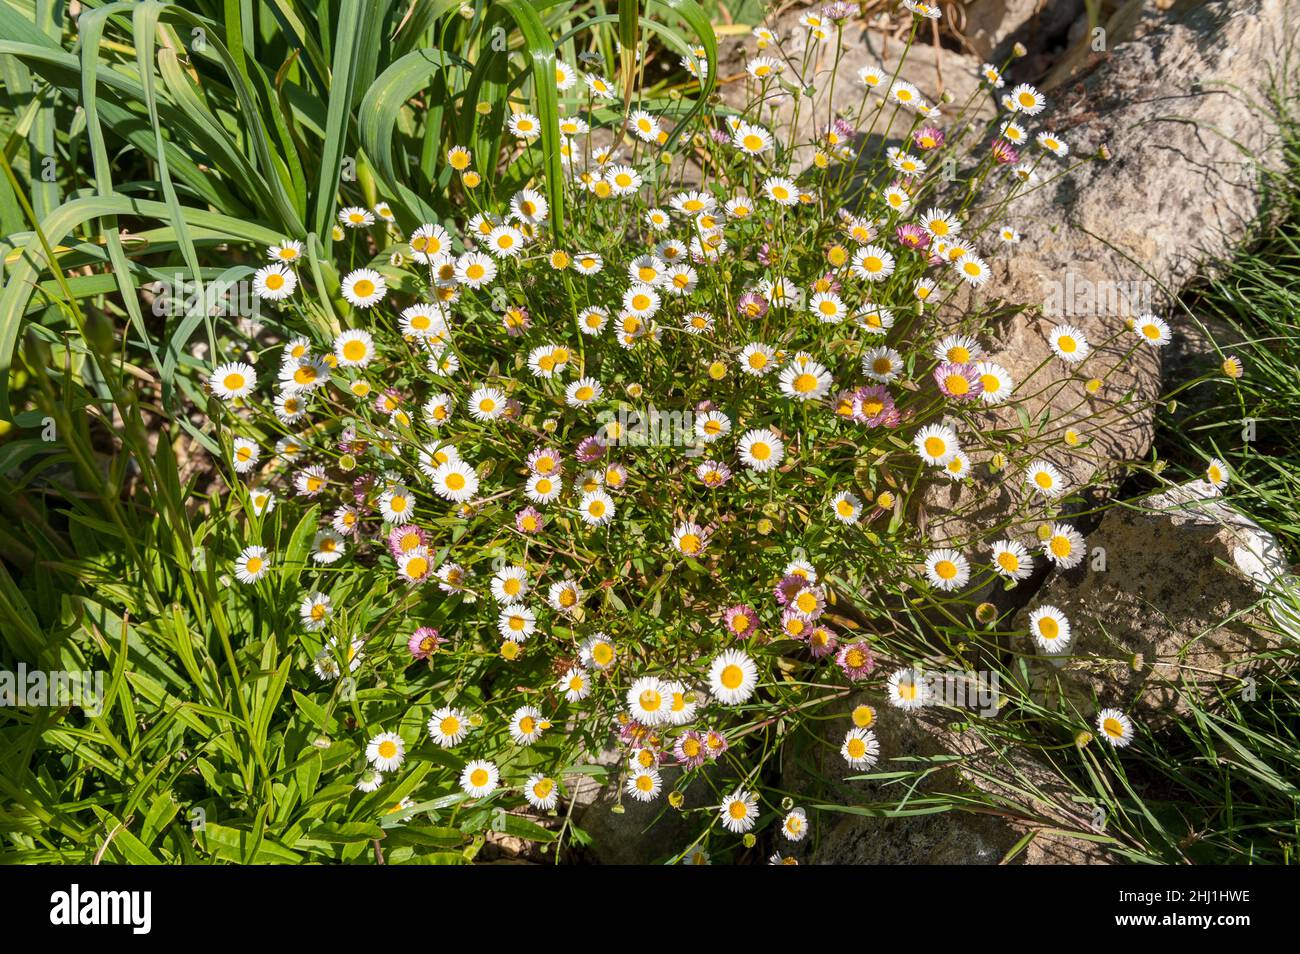 Taumelnde Verbreitung Erigeron karvinskianus fleabane mit einer Fülle von Gänseblümchen wie Blumen Stockfoto